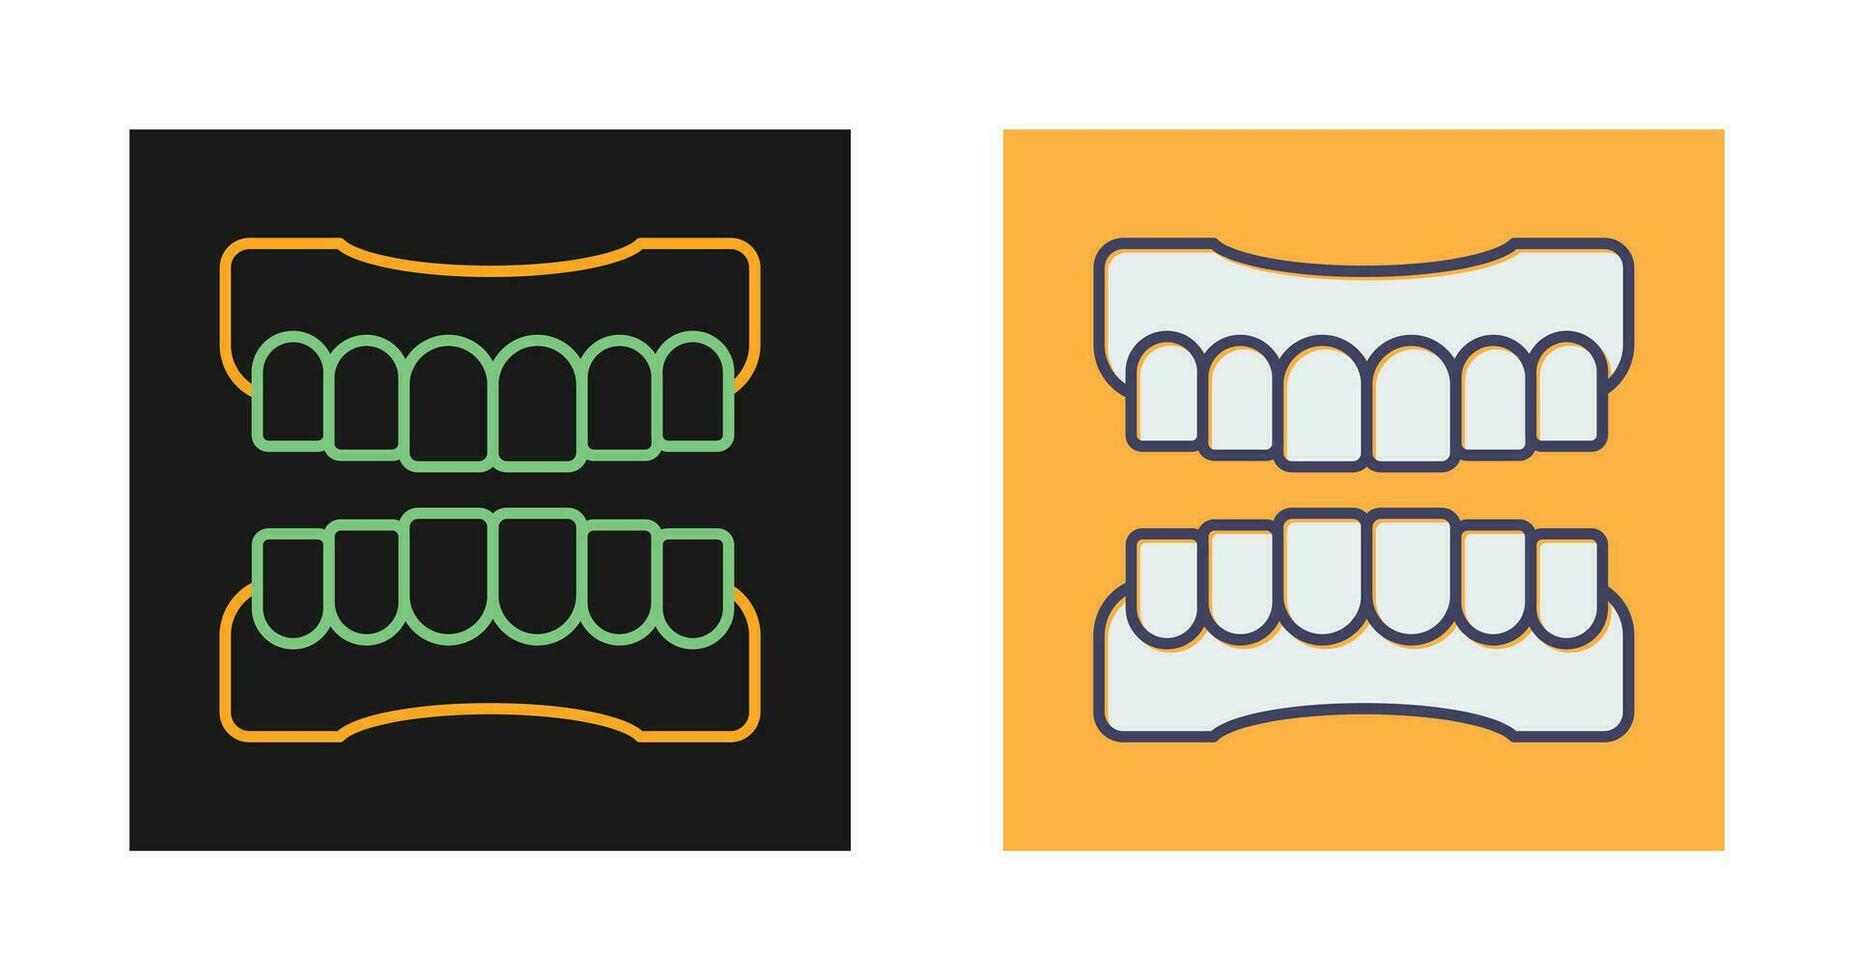 dentiera vettore icona